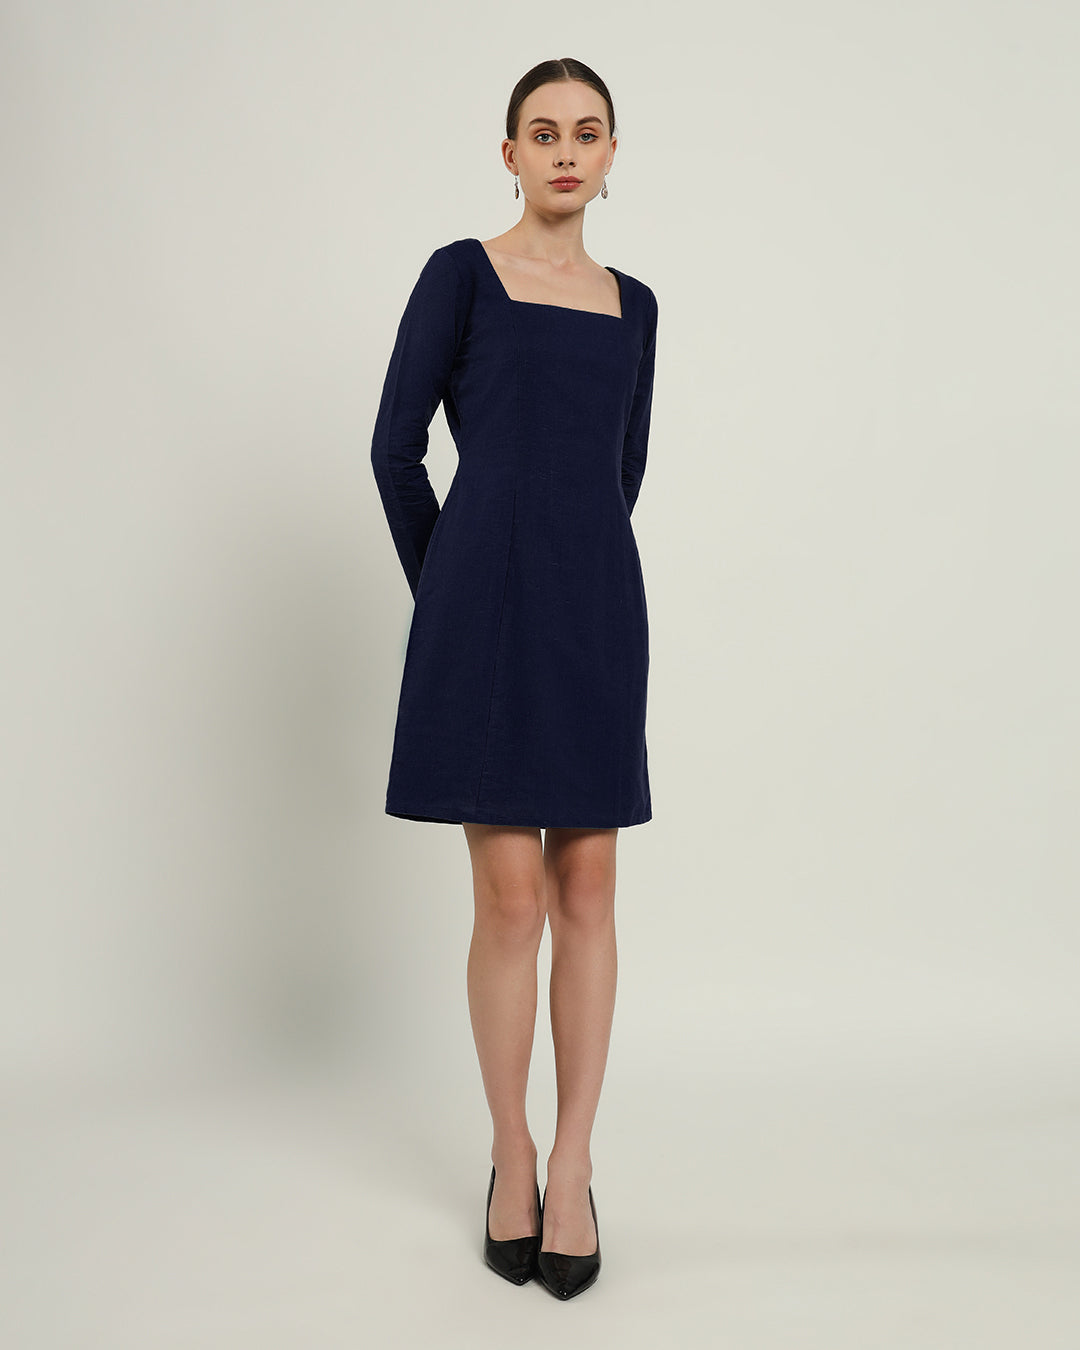 The Auburn Midnight Blue Linen Dress